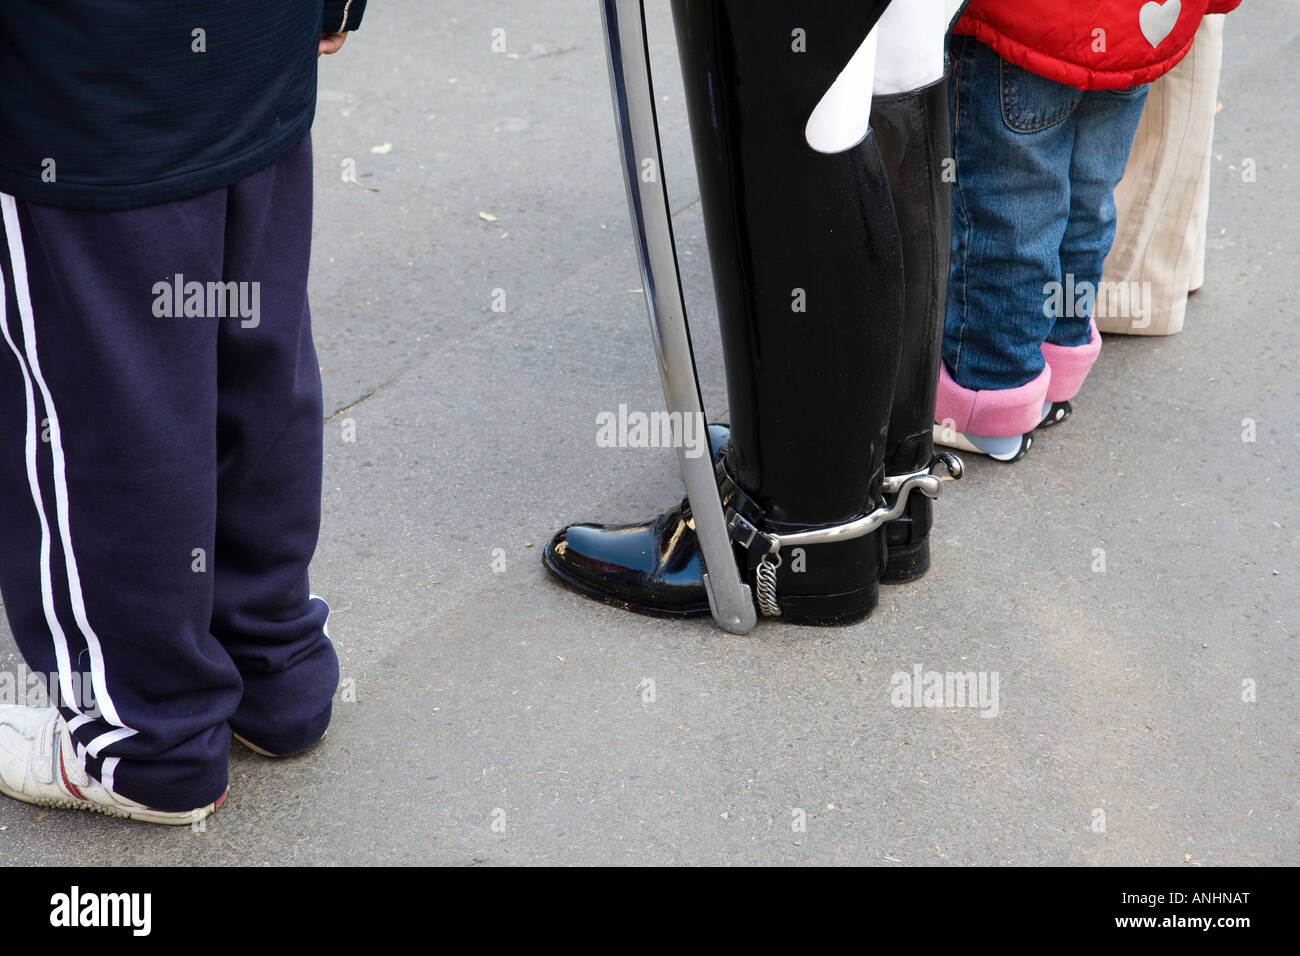 Le contraste de la chaussure d'un garde de la vie (de la Household Cavalry) avec les touristes, Londres, Angleterre. Banque D'Images